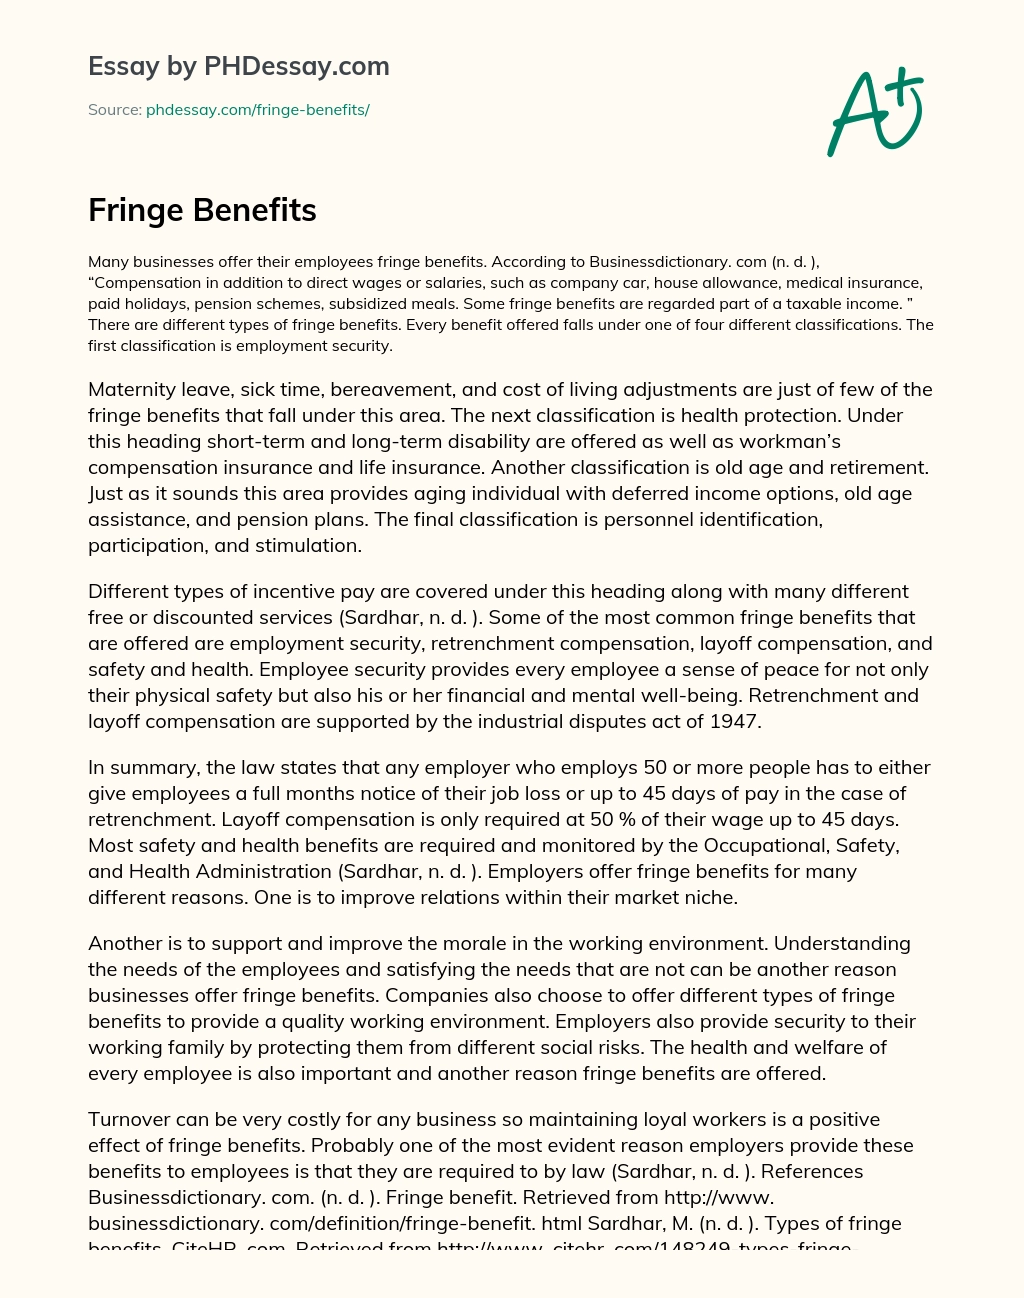 Fringe Benefits essay